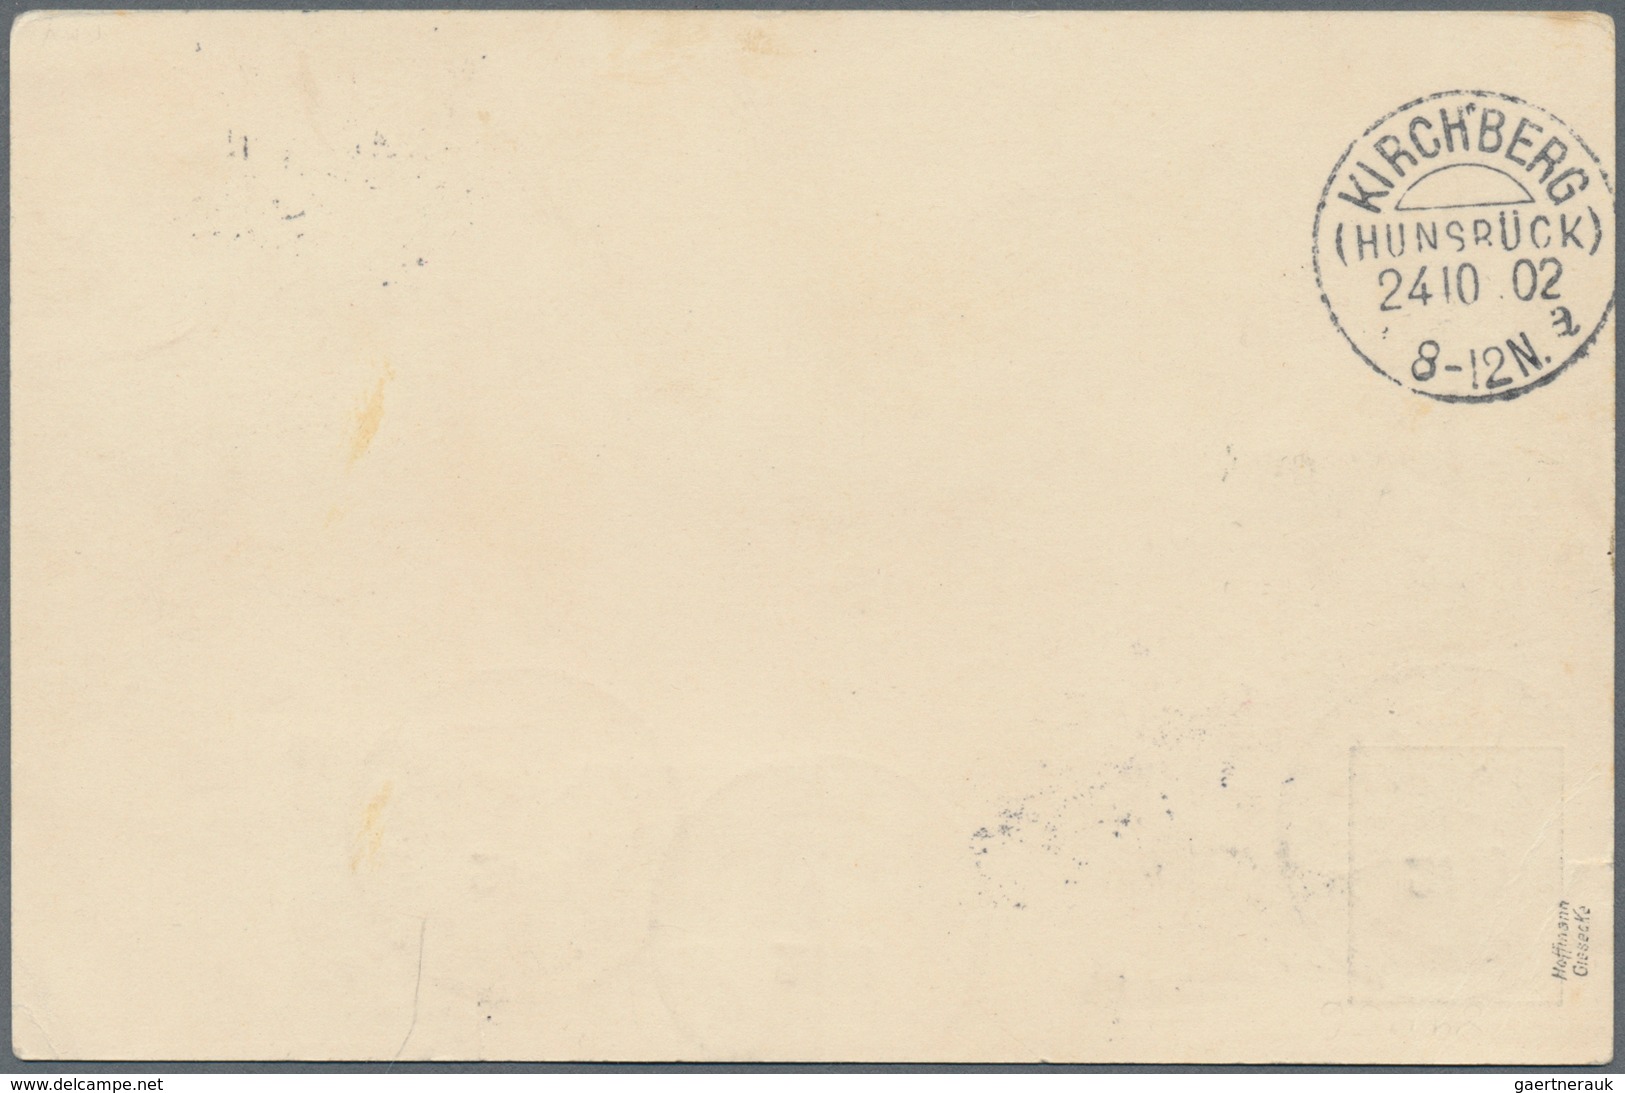 Deutsche Post In Der Türkei - Besonderheiten: 1902 (21.10), Privatpostkarte Germania 2 Pf. Grau 'Rei - Turkse Rijk (kantoren)